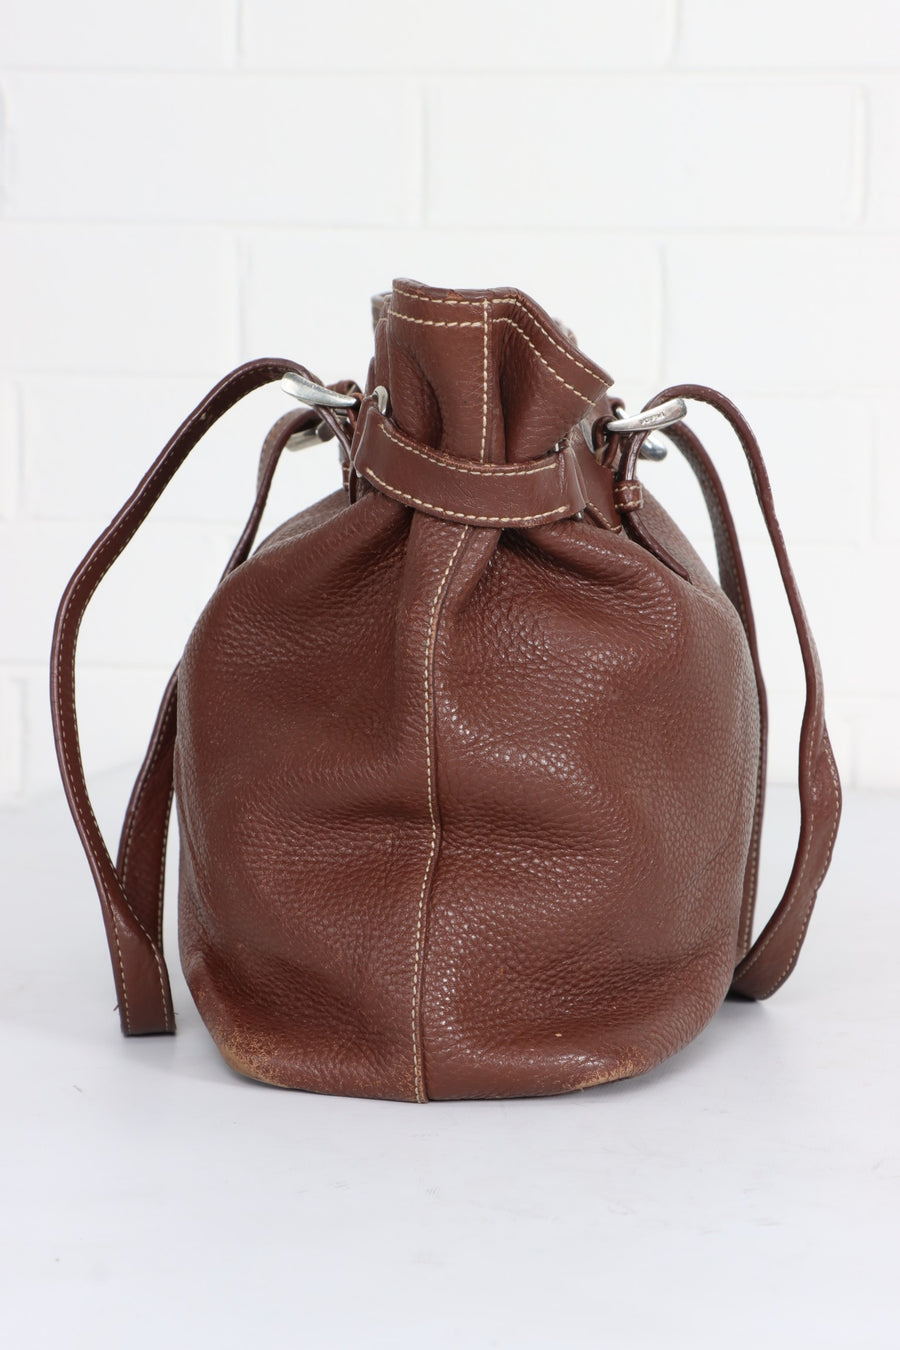 PRADA 'Vitello Daino' Tote Brown Leather Bag Italy Made